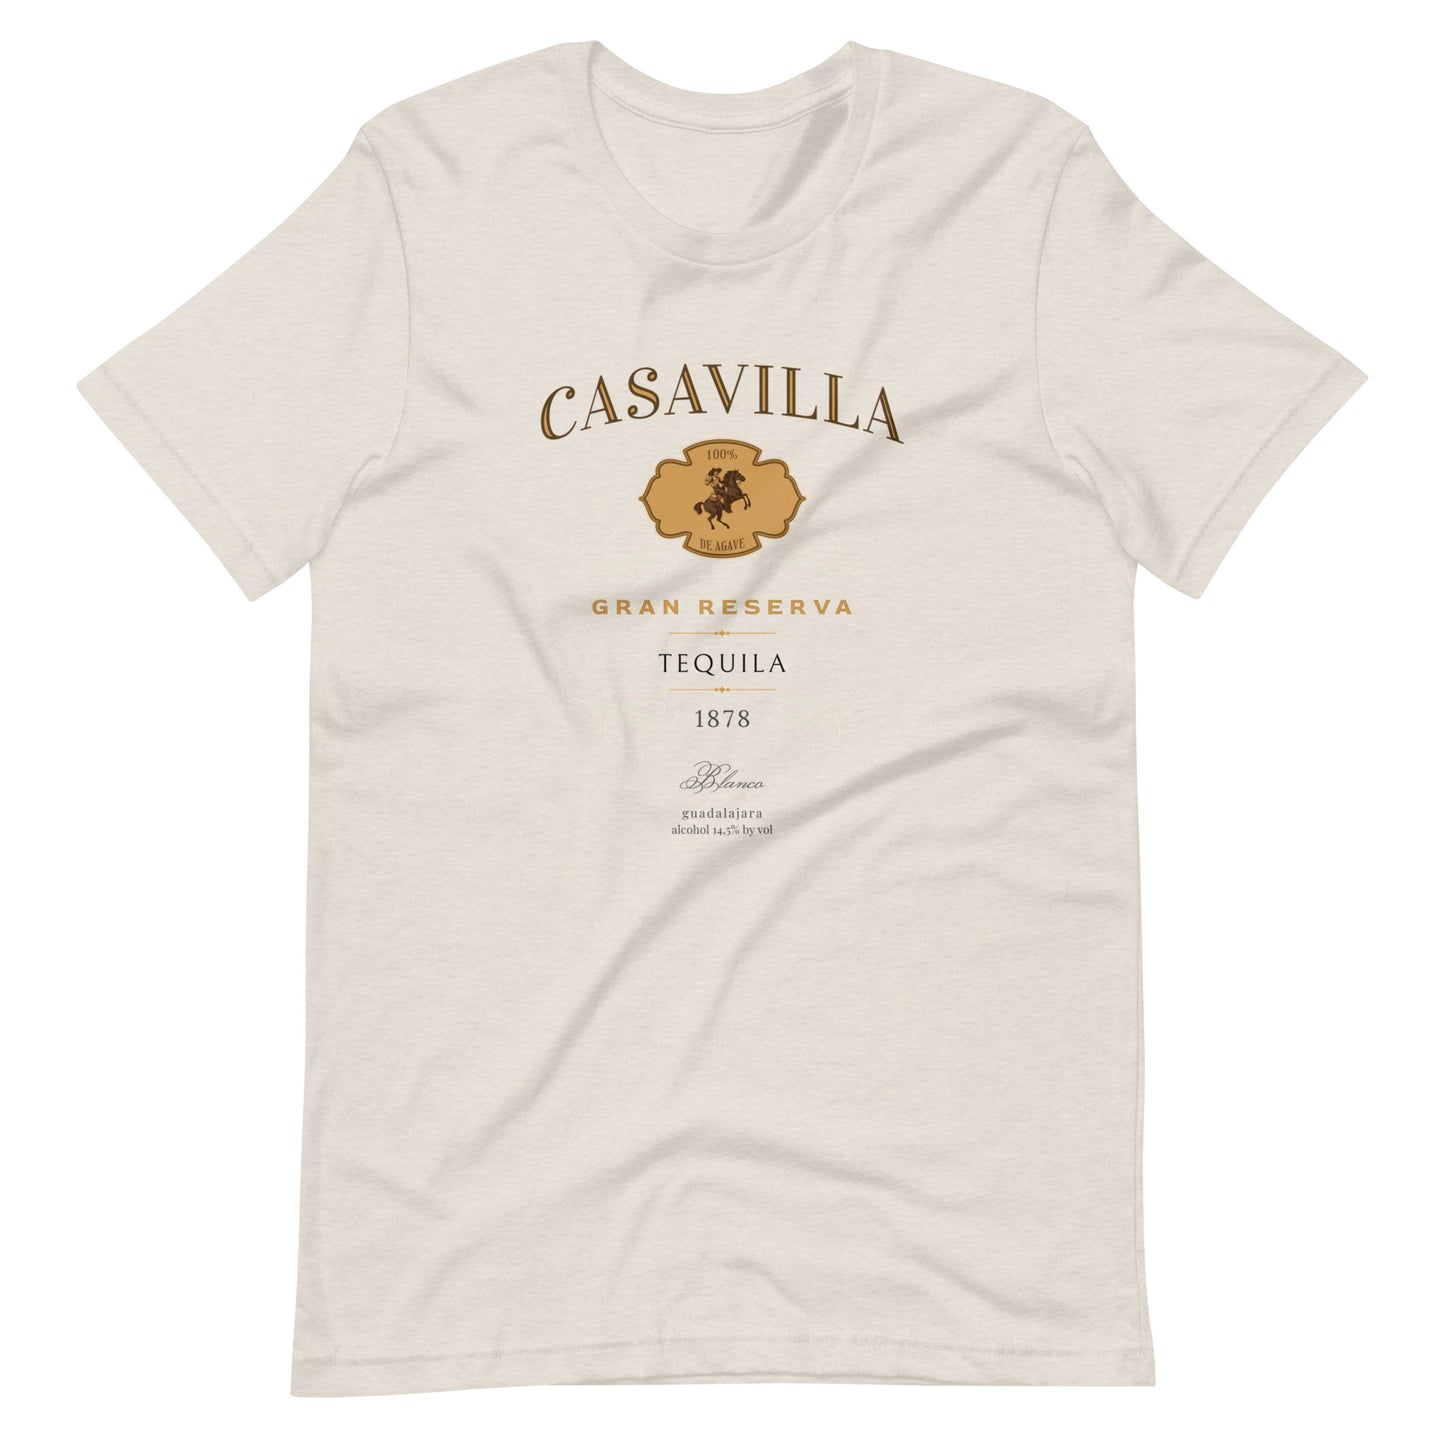 CASAVILLA TEQUILA t shirt